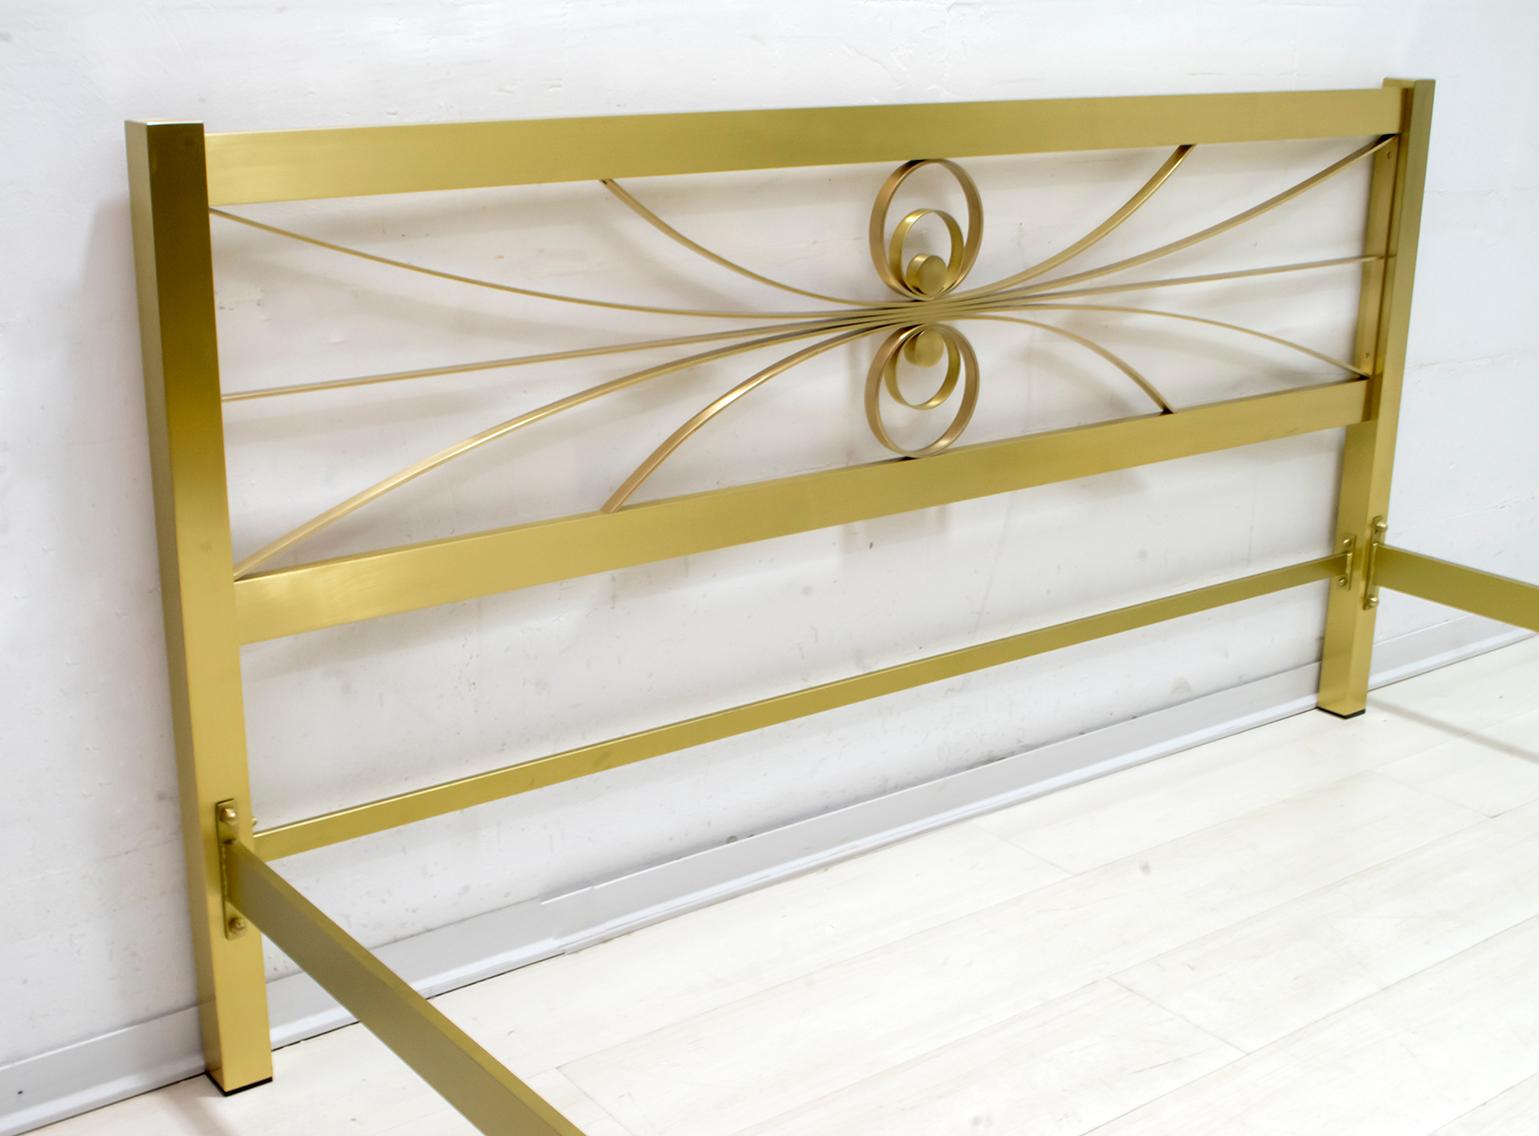 Élégant lit double conçu par Luciano Frigerio, Italie, années 1970, en bon état d'origine, lit conservé dans l'entrepôt d'une fabrique de meubles. La partie décorative comprend des traverses en métal avec une finition dorée.